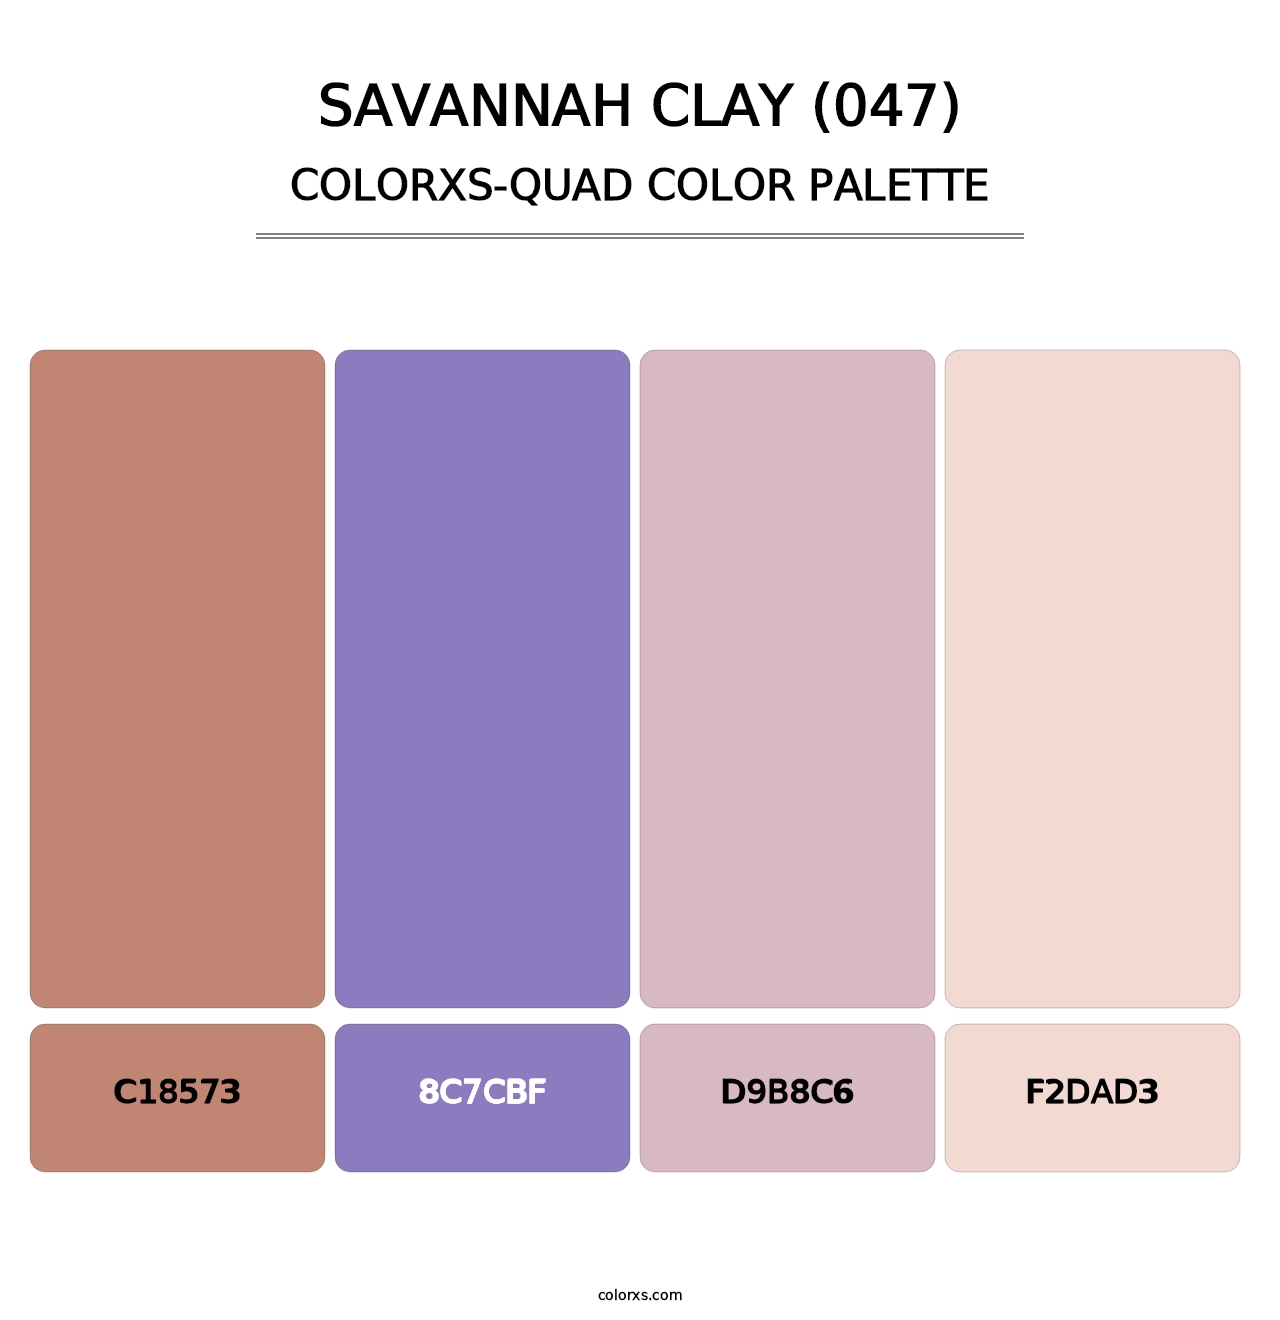 Savannah Clay (047) - Colorxs Quad Palette